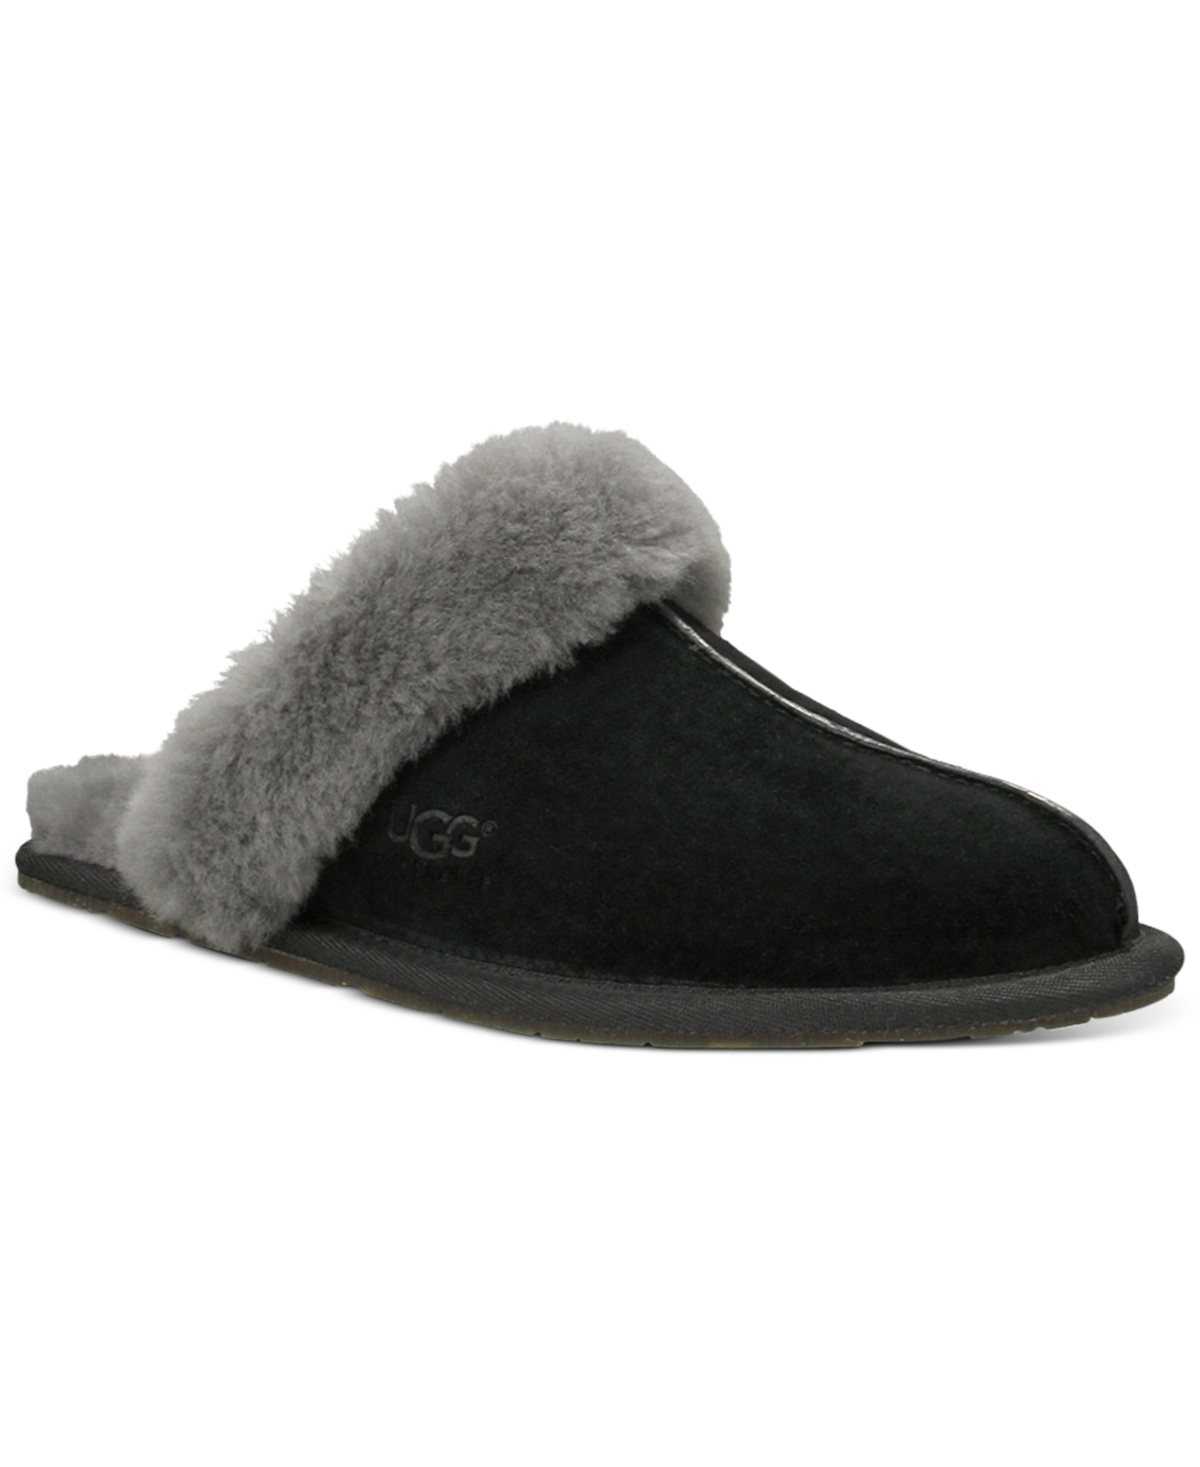 Shop Ugg Women's Scuffette Ii Slippers In Black,grey